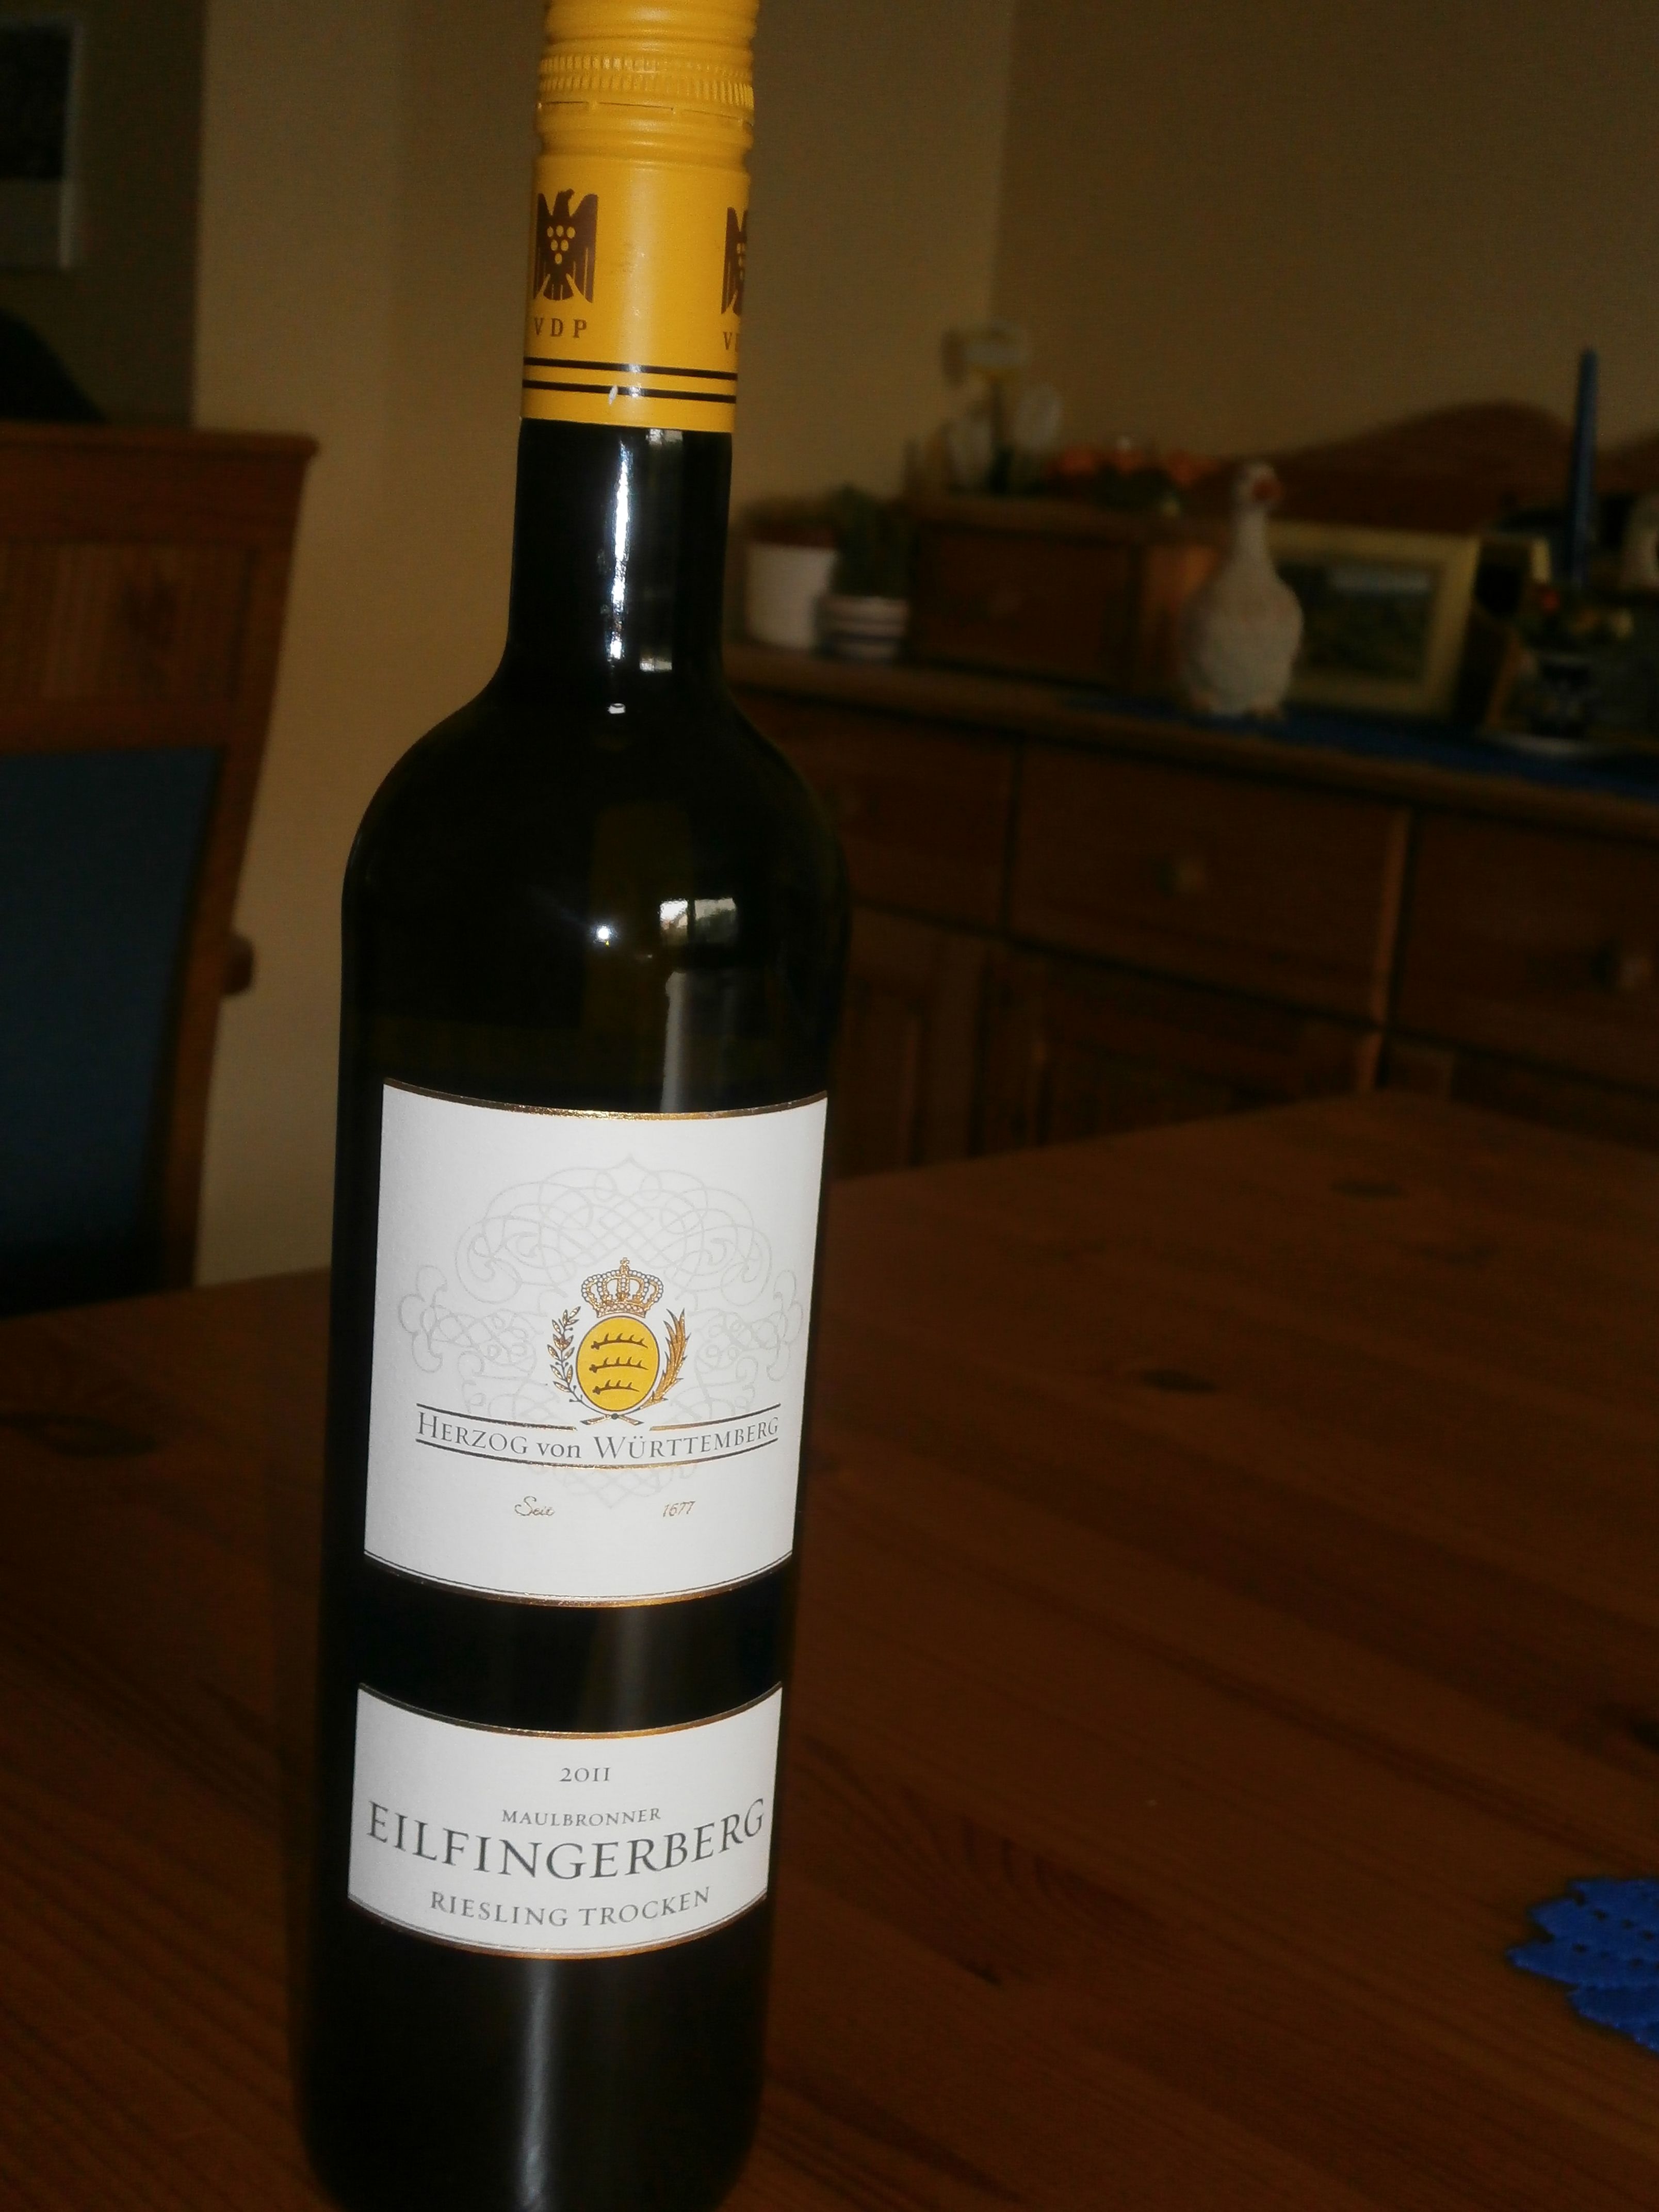 robert a, der Wein heißt tatsächlich Eilfinger,
Elfinger wird er nur in Maulbronn genannt